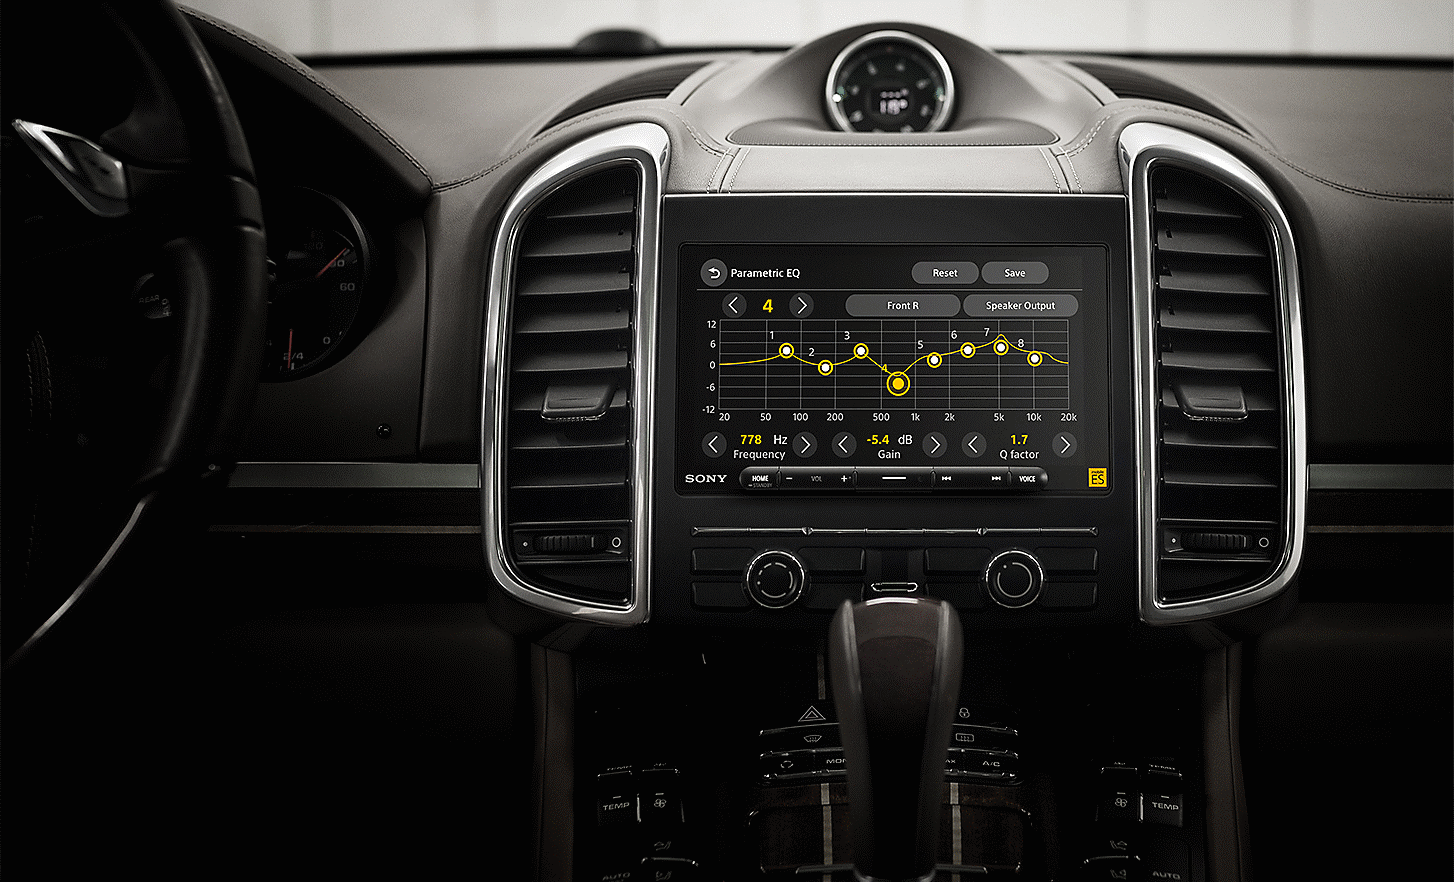 Vue avant du tableau de bord d’une voiture avec le récepteur multimédia XAV-9000ES installé et les commandes audio affichées à l’écran.